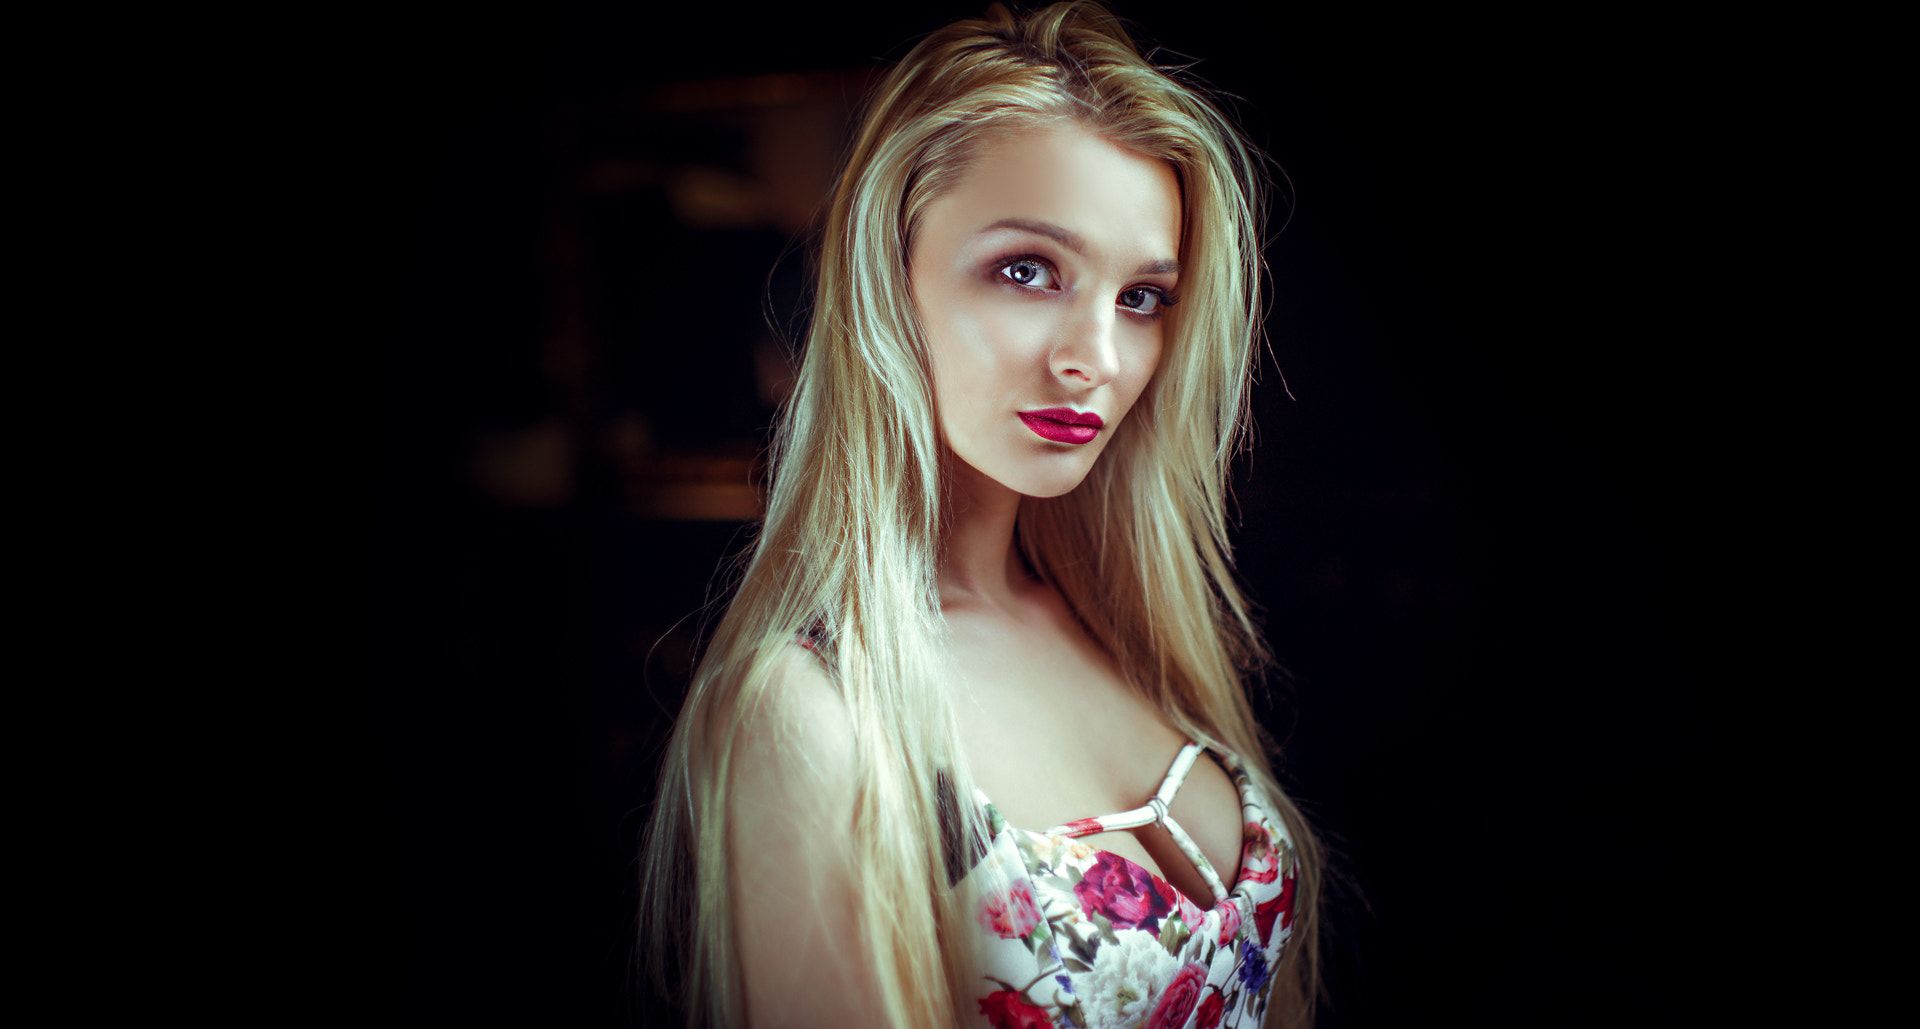 Wallpaper Hot girl model, blonde, portrait